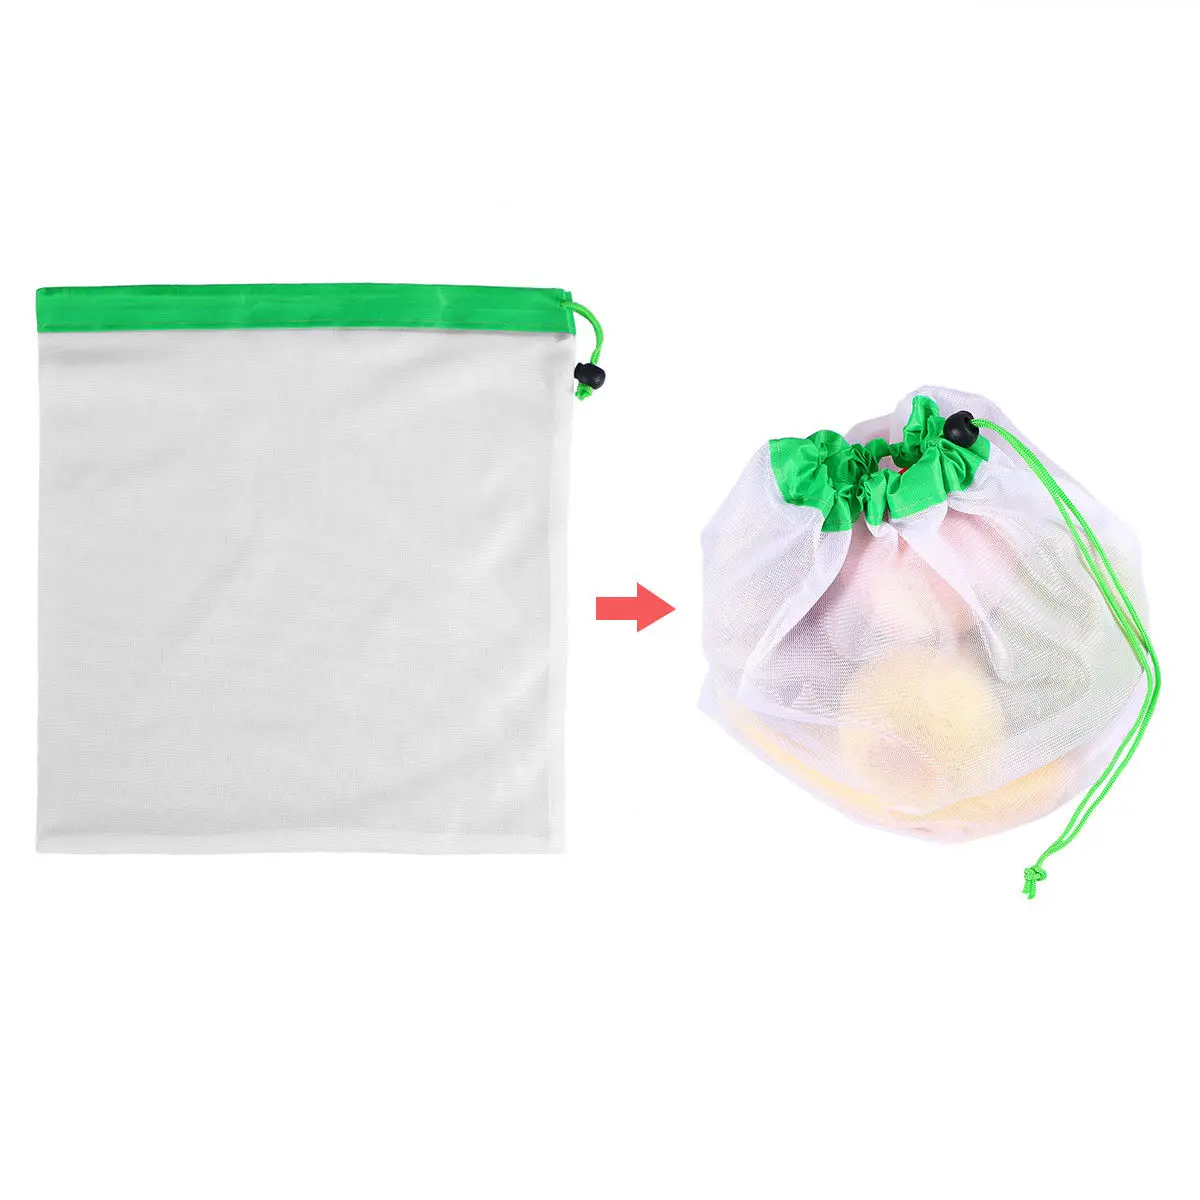 3 размера многоразовые сетки производят сумки моющиеся мешки для продуктовых покупок хранения фруктов овощей игрушки разное Органайзер